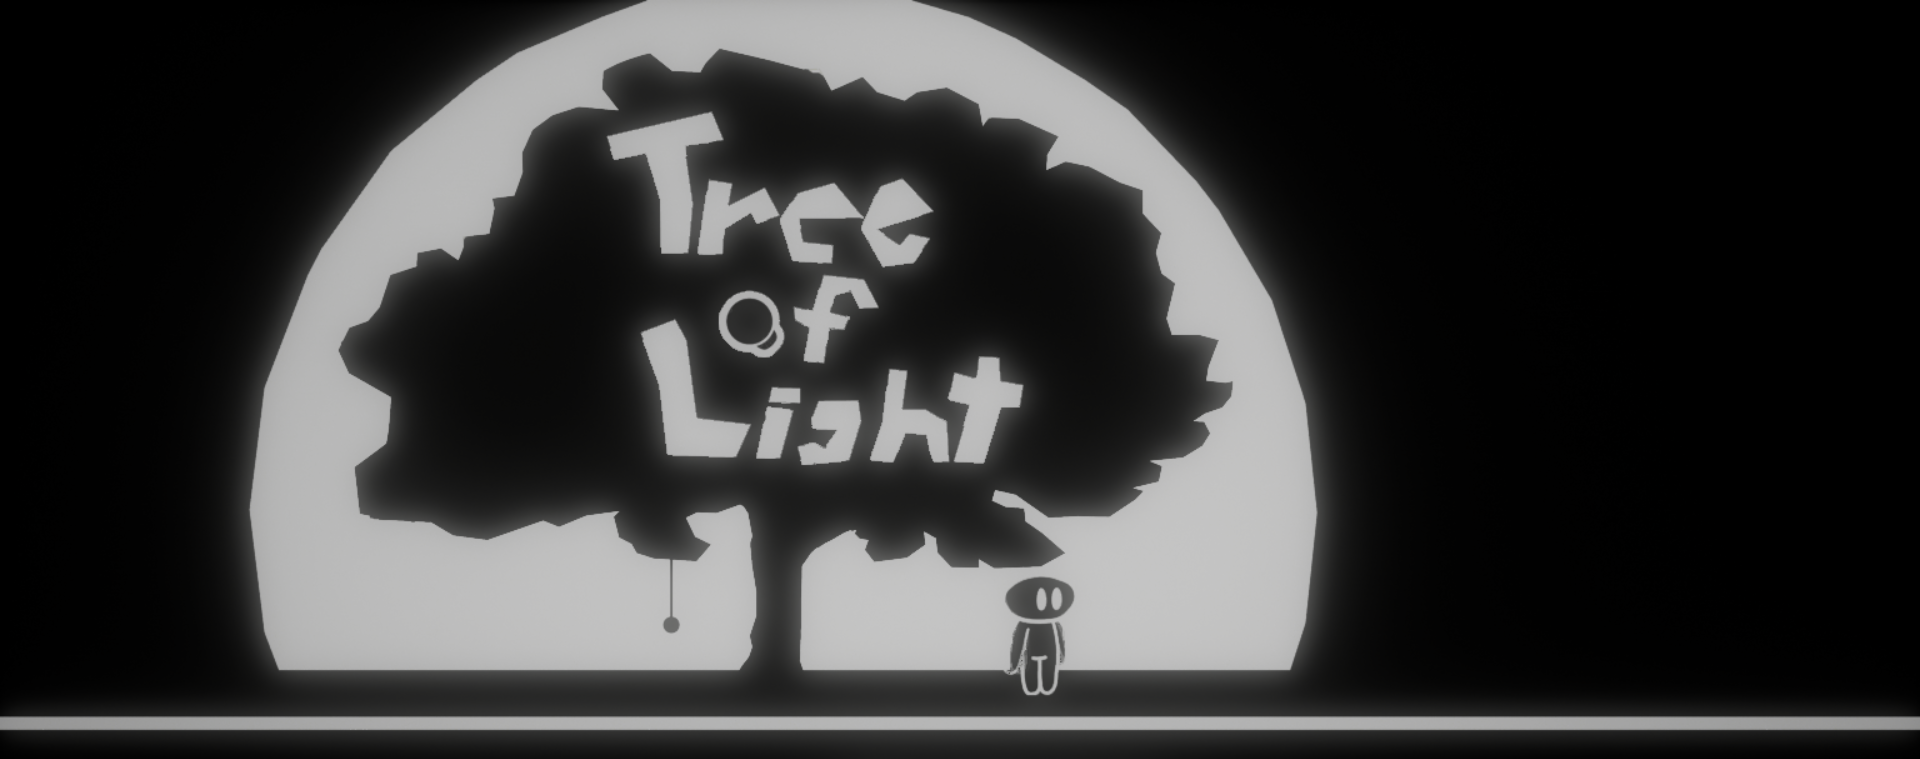 Tree Of Light